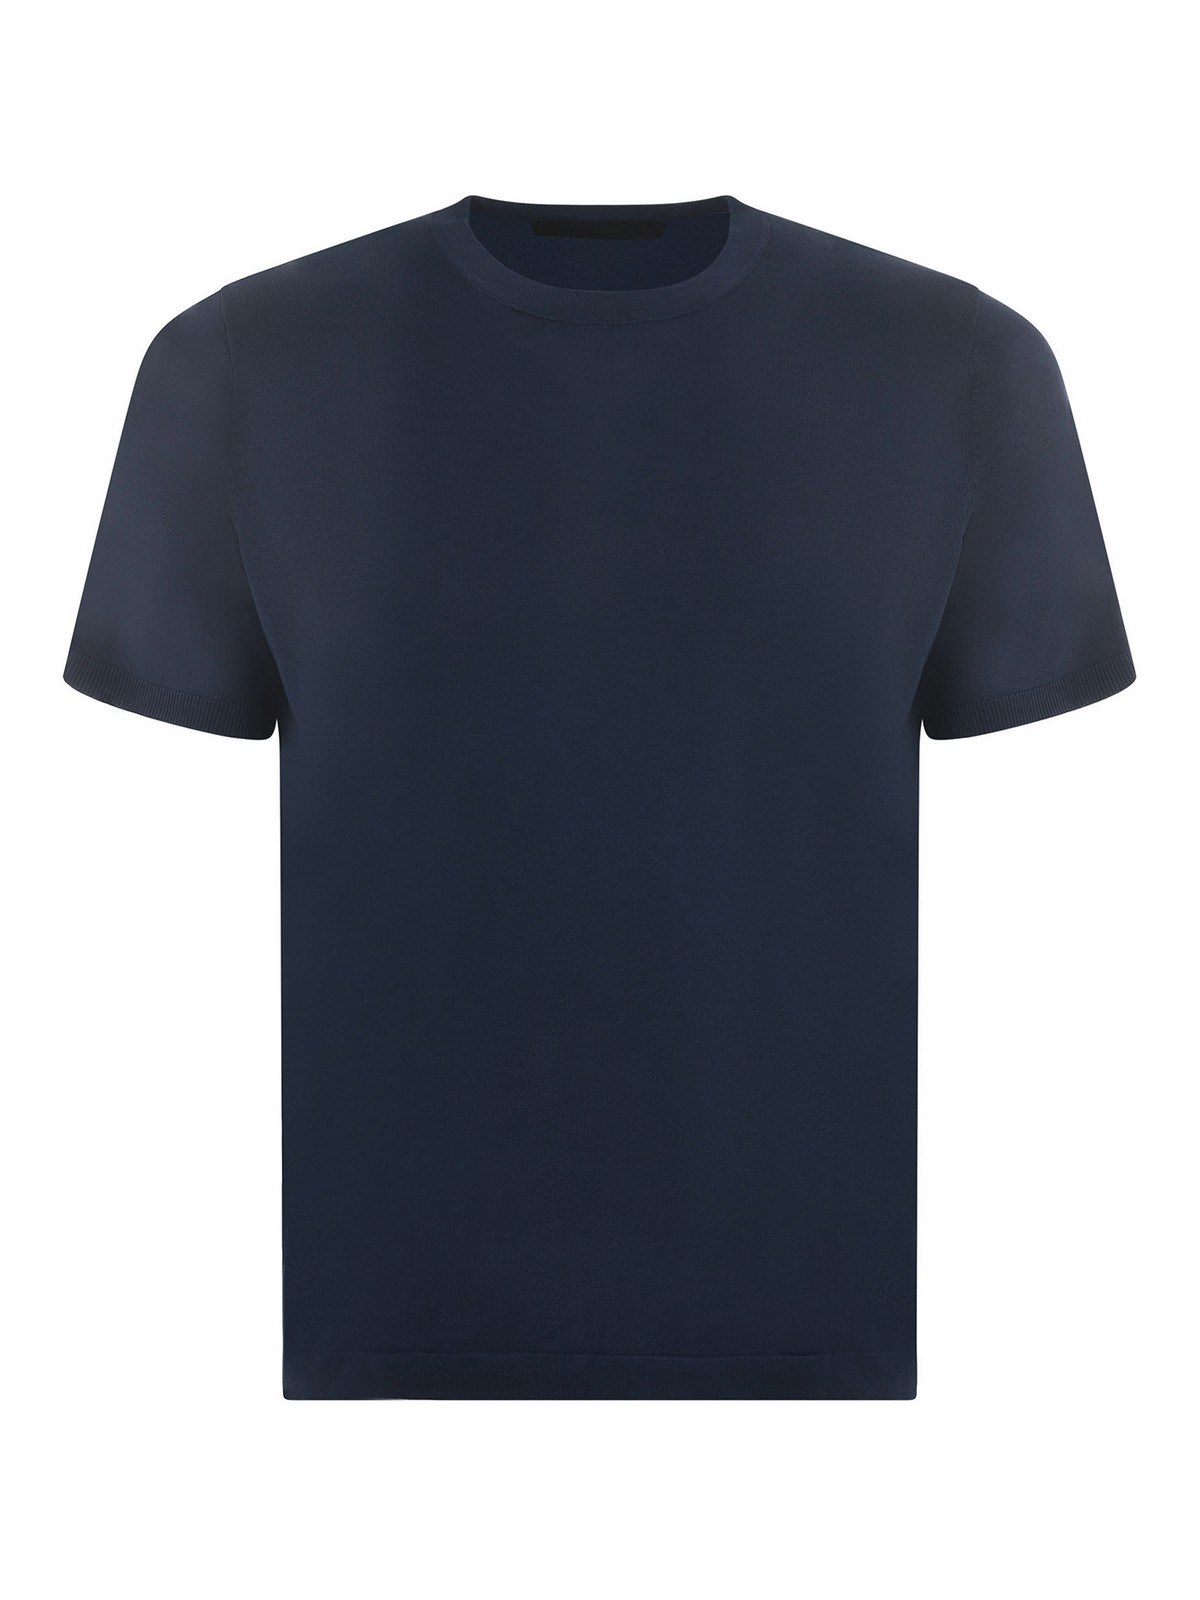 Jeordie's Jeordies T-shirt In Blue